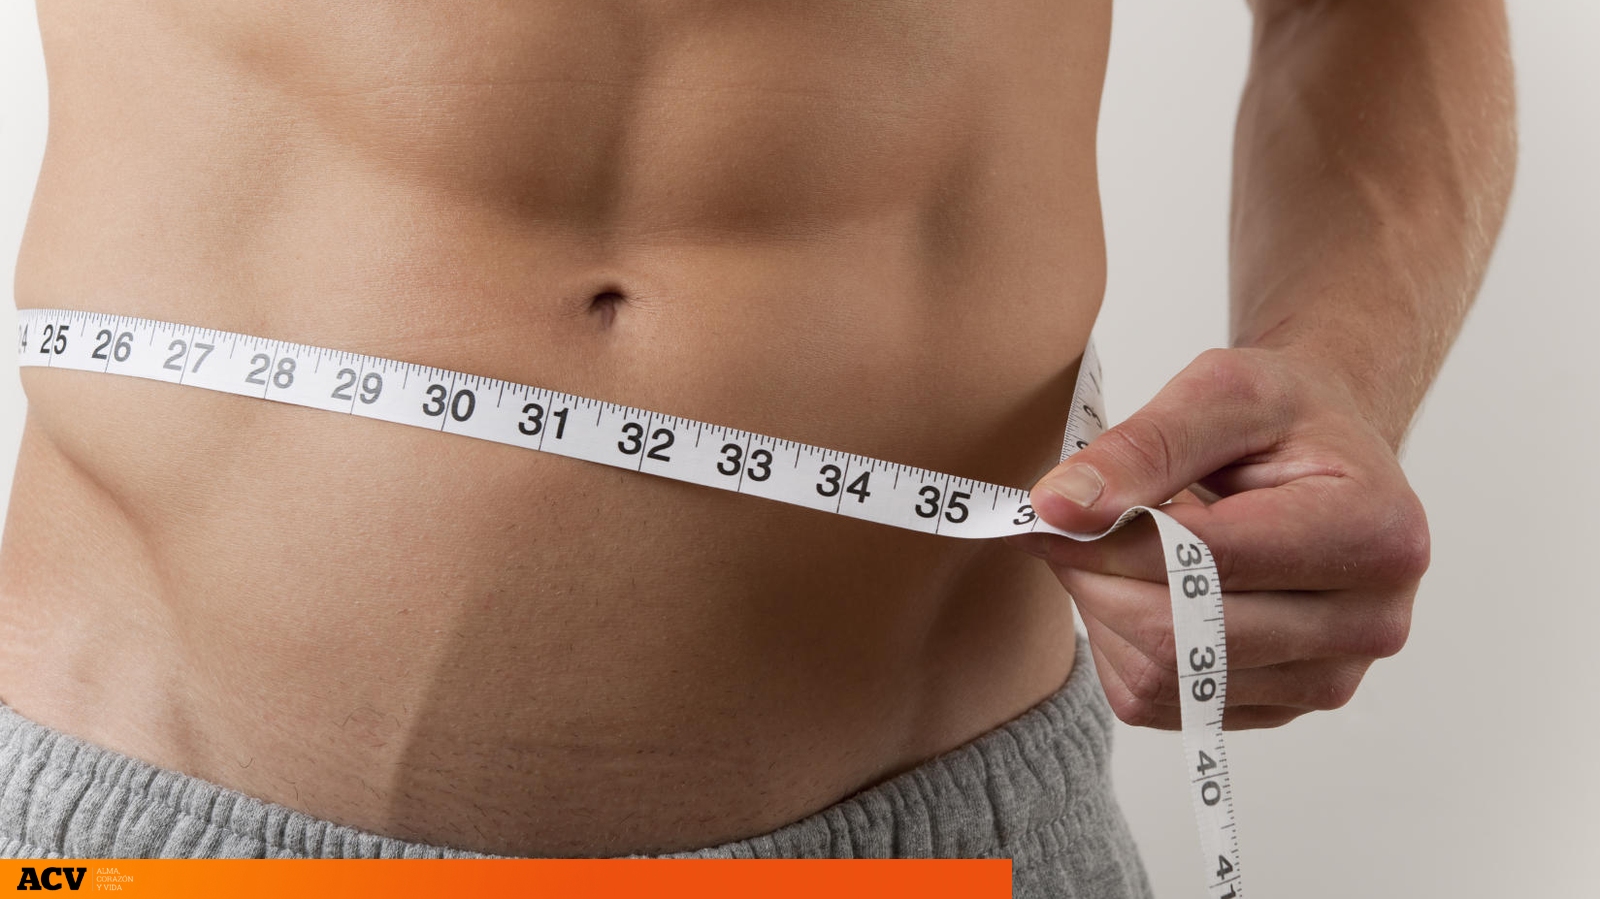 Los mejores ejercicios para quemar grasa y marcar el abdomen en casa